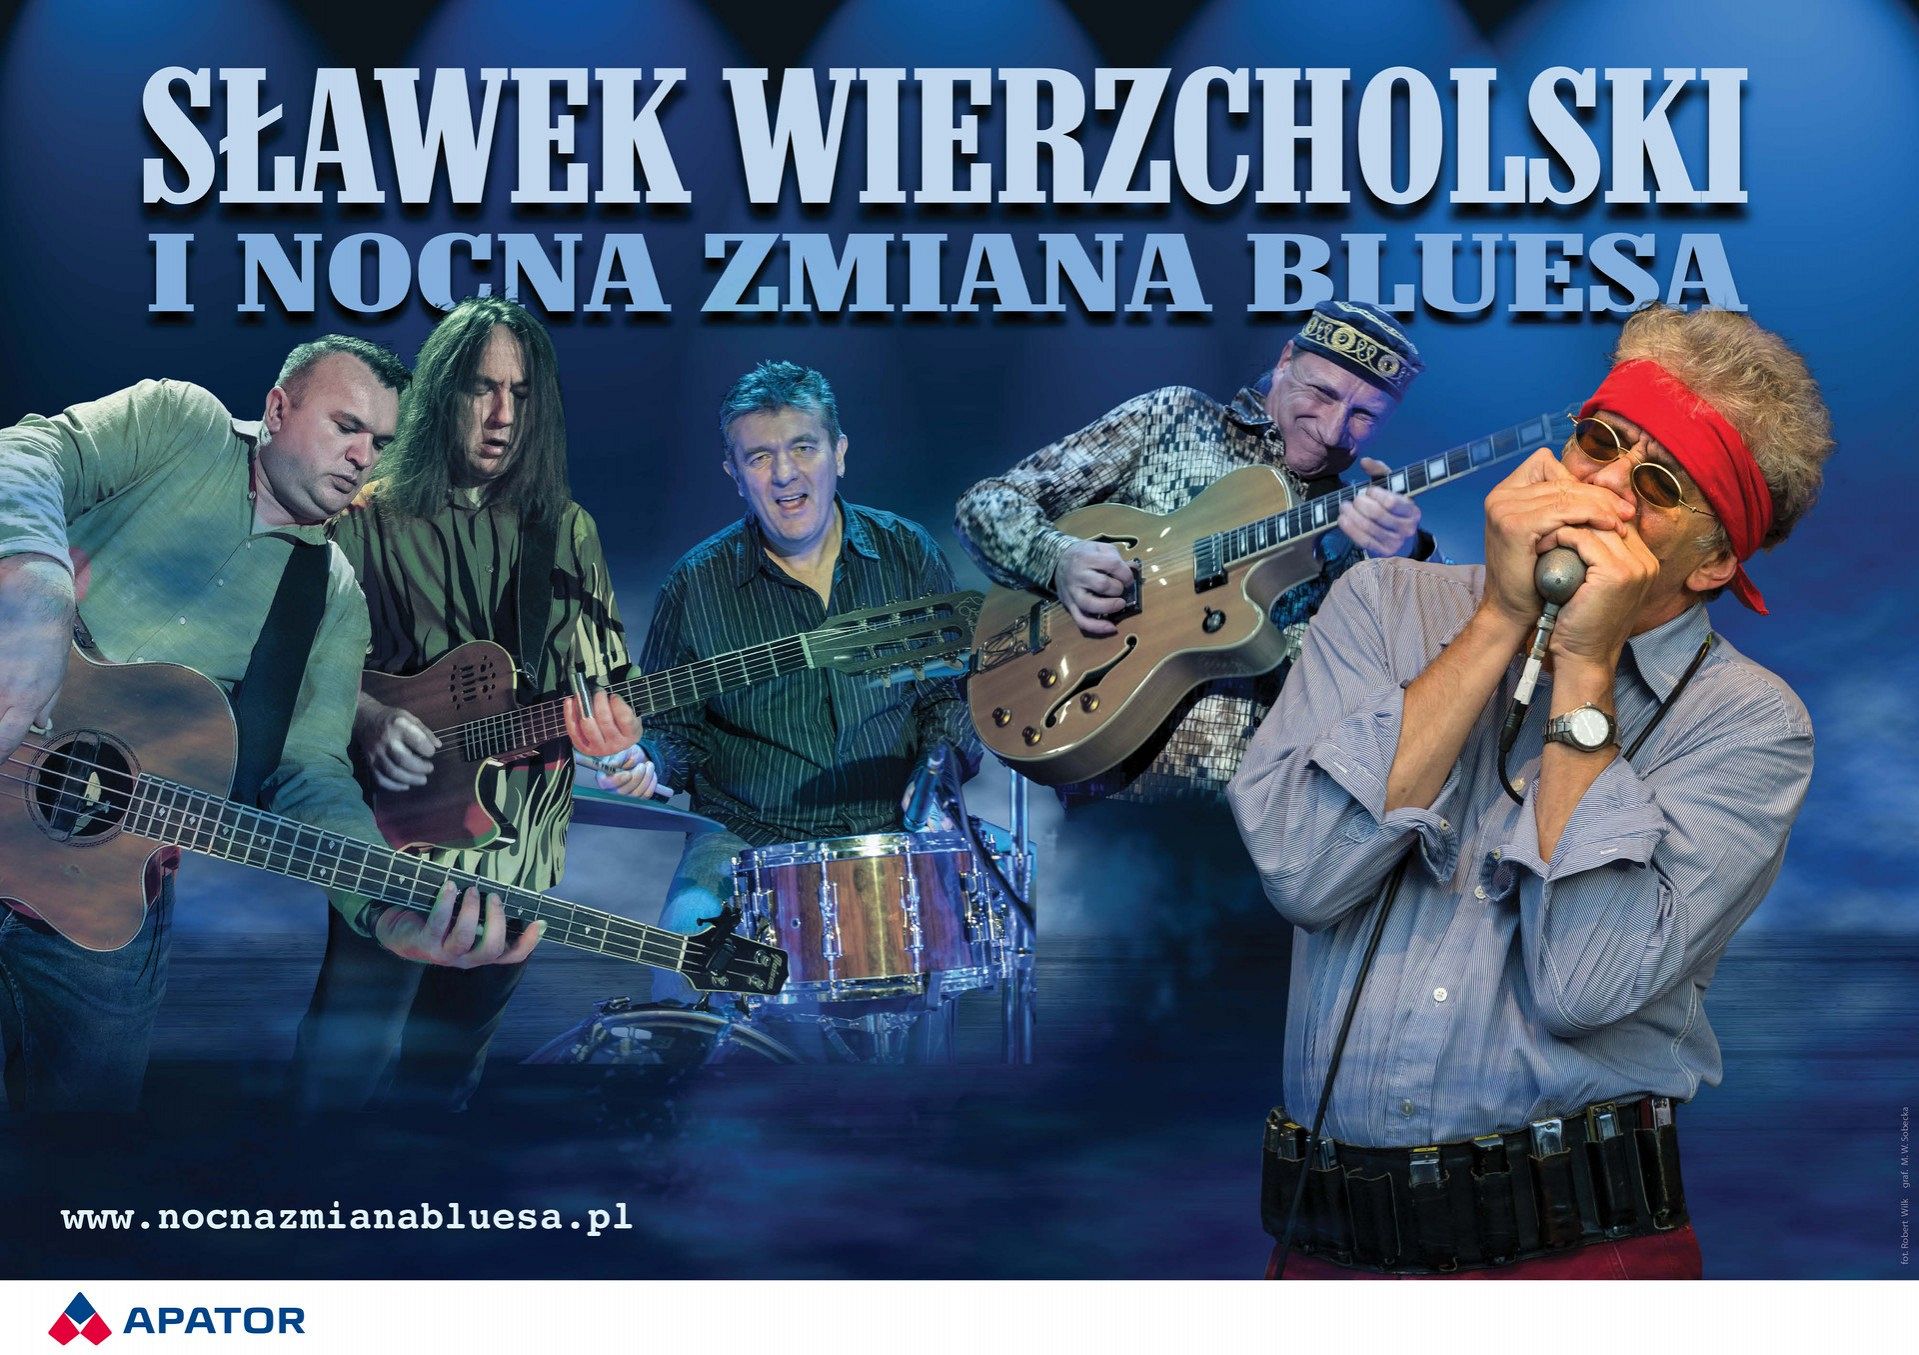 40-lecie Nocnej Zmiany Bluesa – koncert w Lęborku